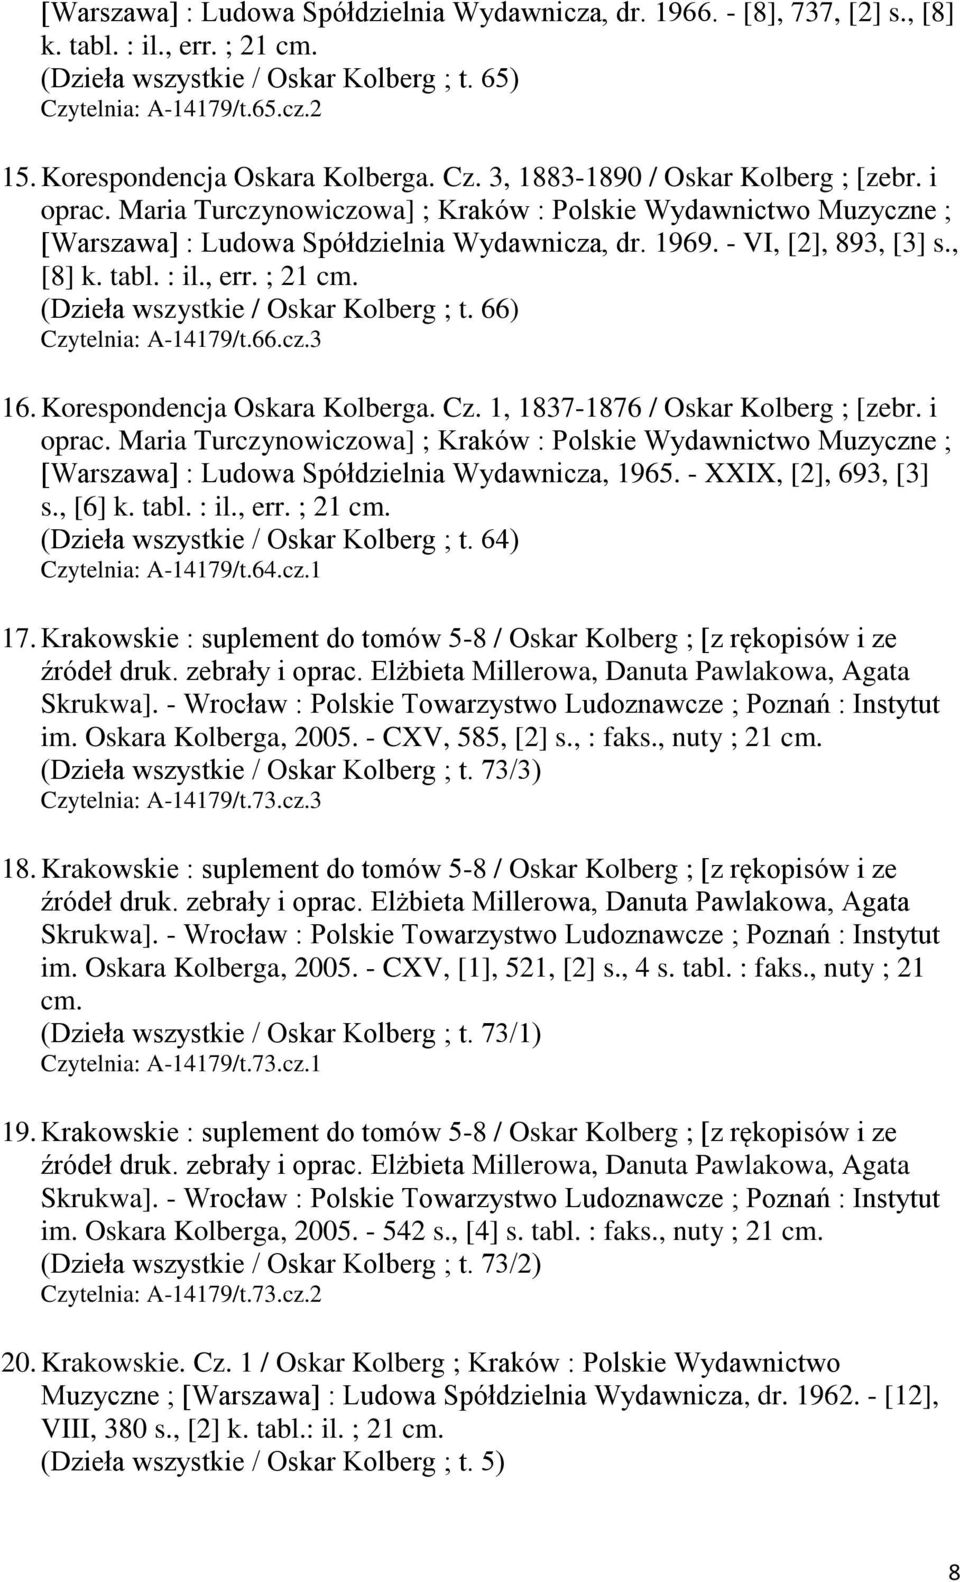 1969. - VI, [2], 893, [3] s., [8] k. tabl. : il., err. ; 21 cm. (Dzieła wszystkie / Oskar Kolberg ; t. 66) Czytelnia: A-14179/t.66.cz.3 16. Korespondencja Oskara Kolberga. Cz. 1, 1837-1876 / Oskar Kolberg ; [zebr.